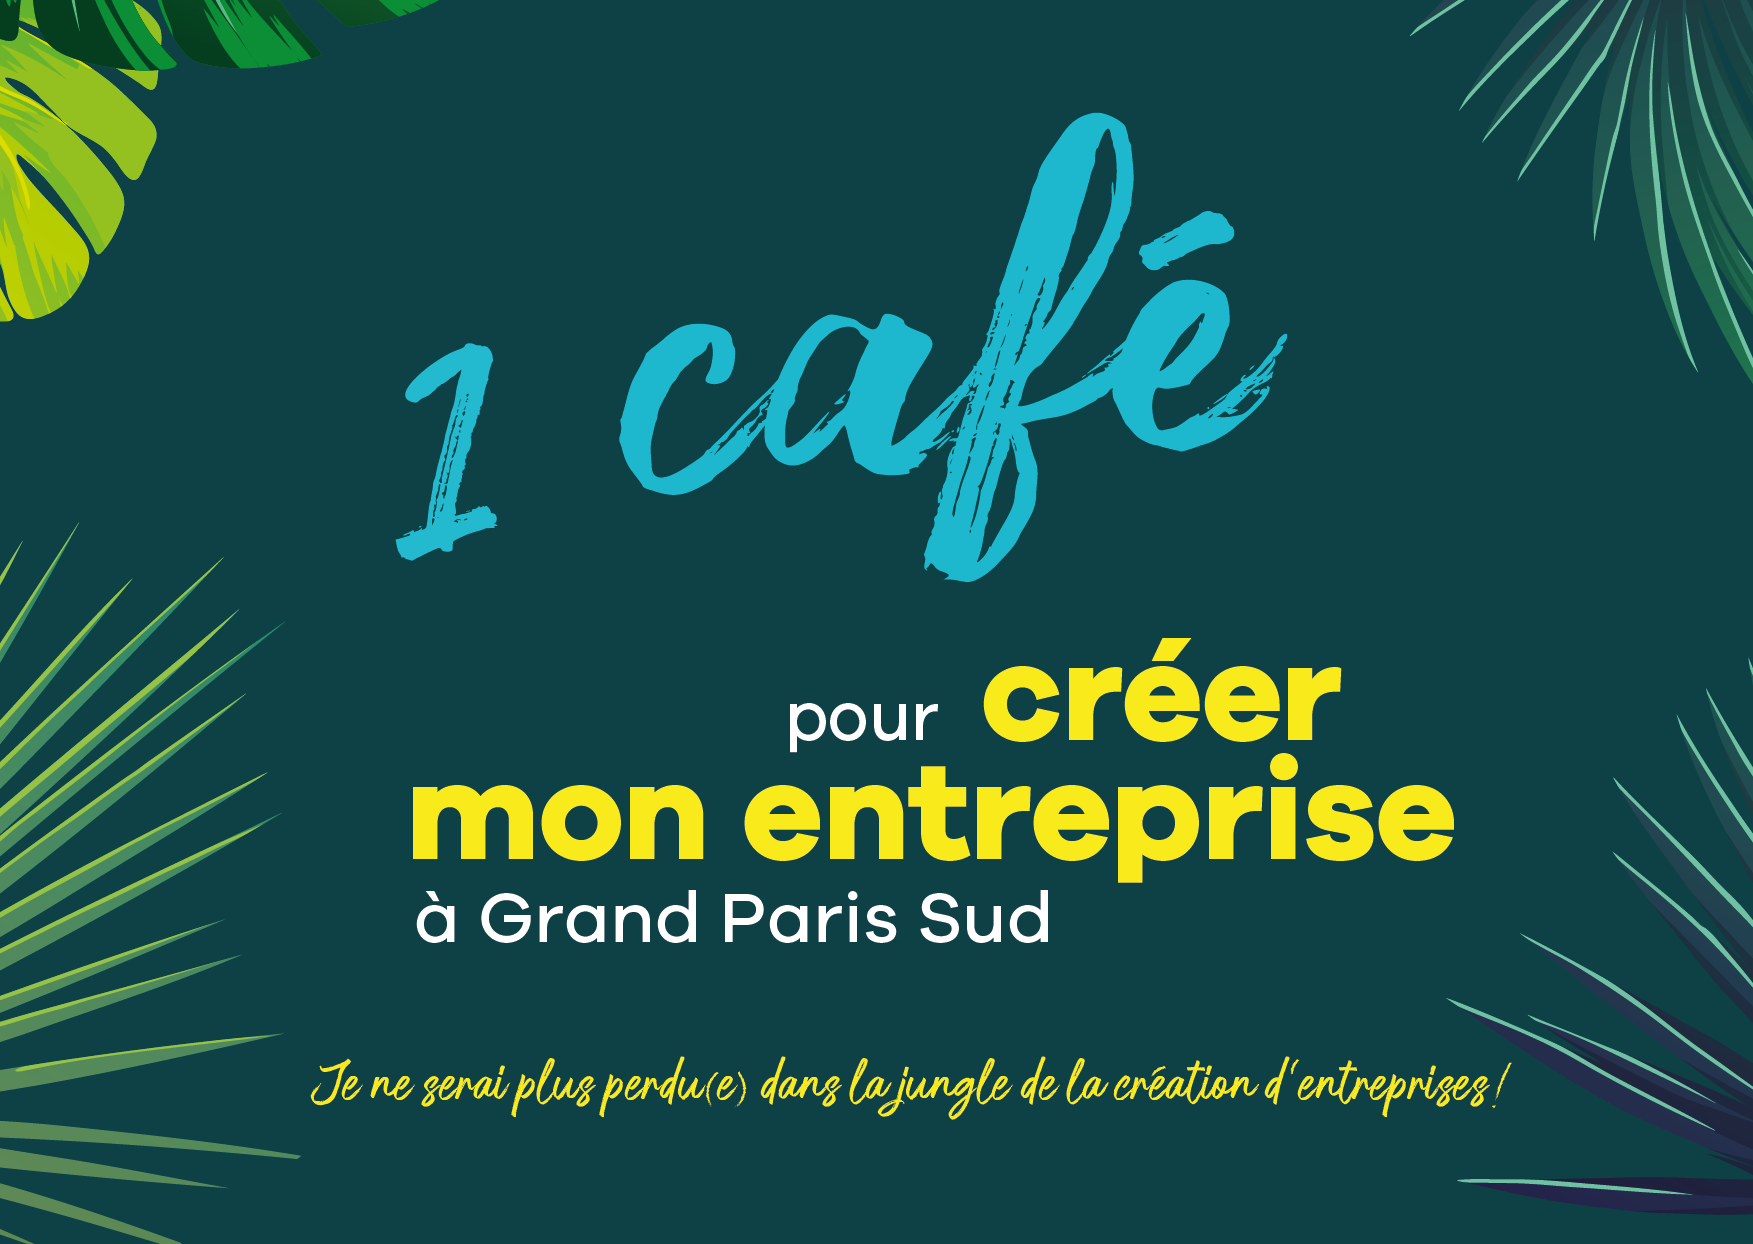 image de l'article " 1 café pour trouver mon entreprise" au Médiapôle Simone Veil à Grigny le 16 novembre 